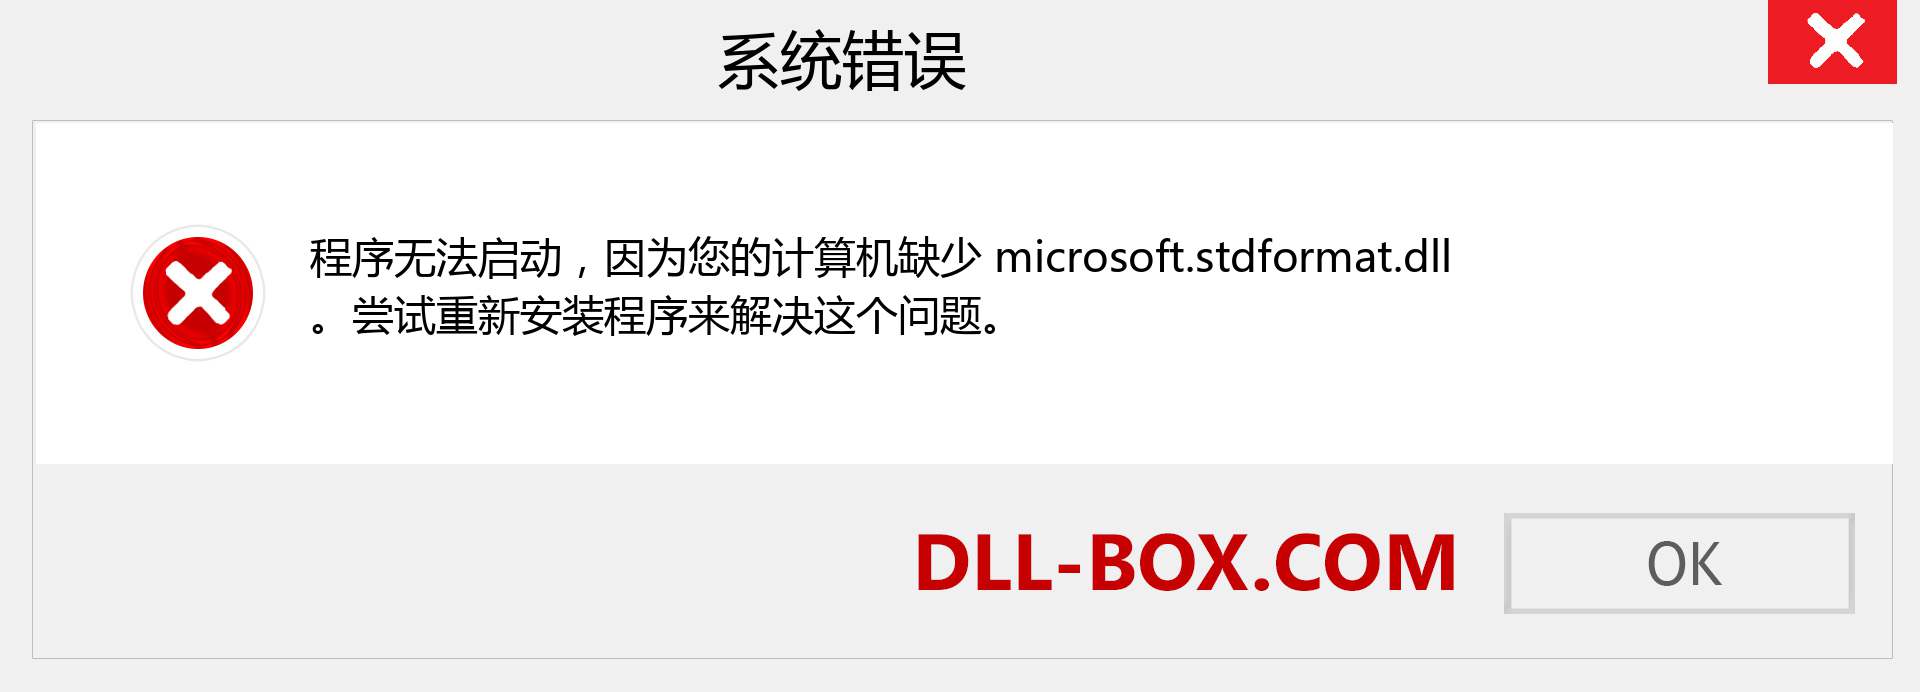 microsoft.stdformat.dll 文件丢失？。 适用于 Windows 7、8、10 的下载 - 修复 Windows、照片、图像上的 microsoft.stdformat dll 丢失错误